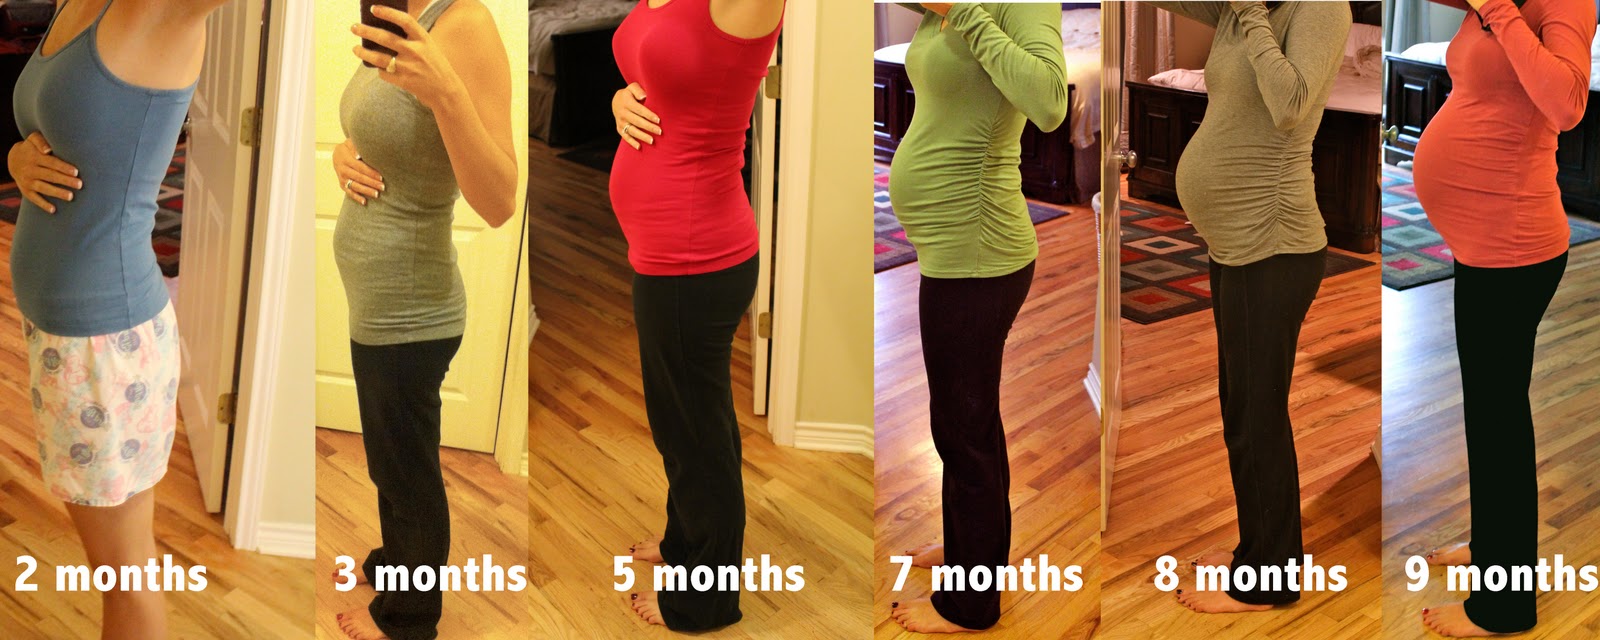 Живот на 1 месяце беременности фото у худых девушек